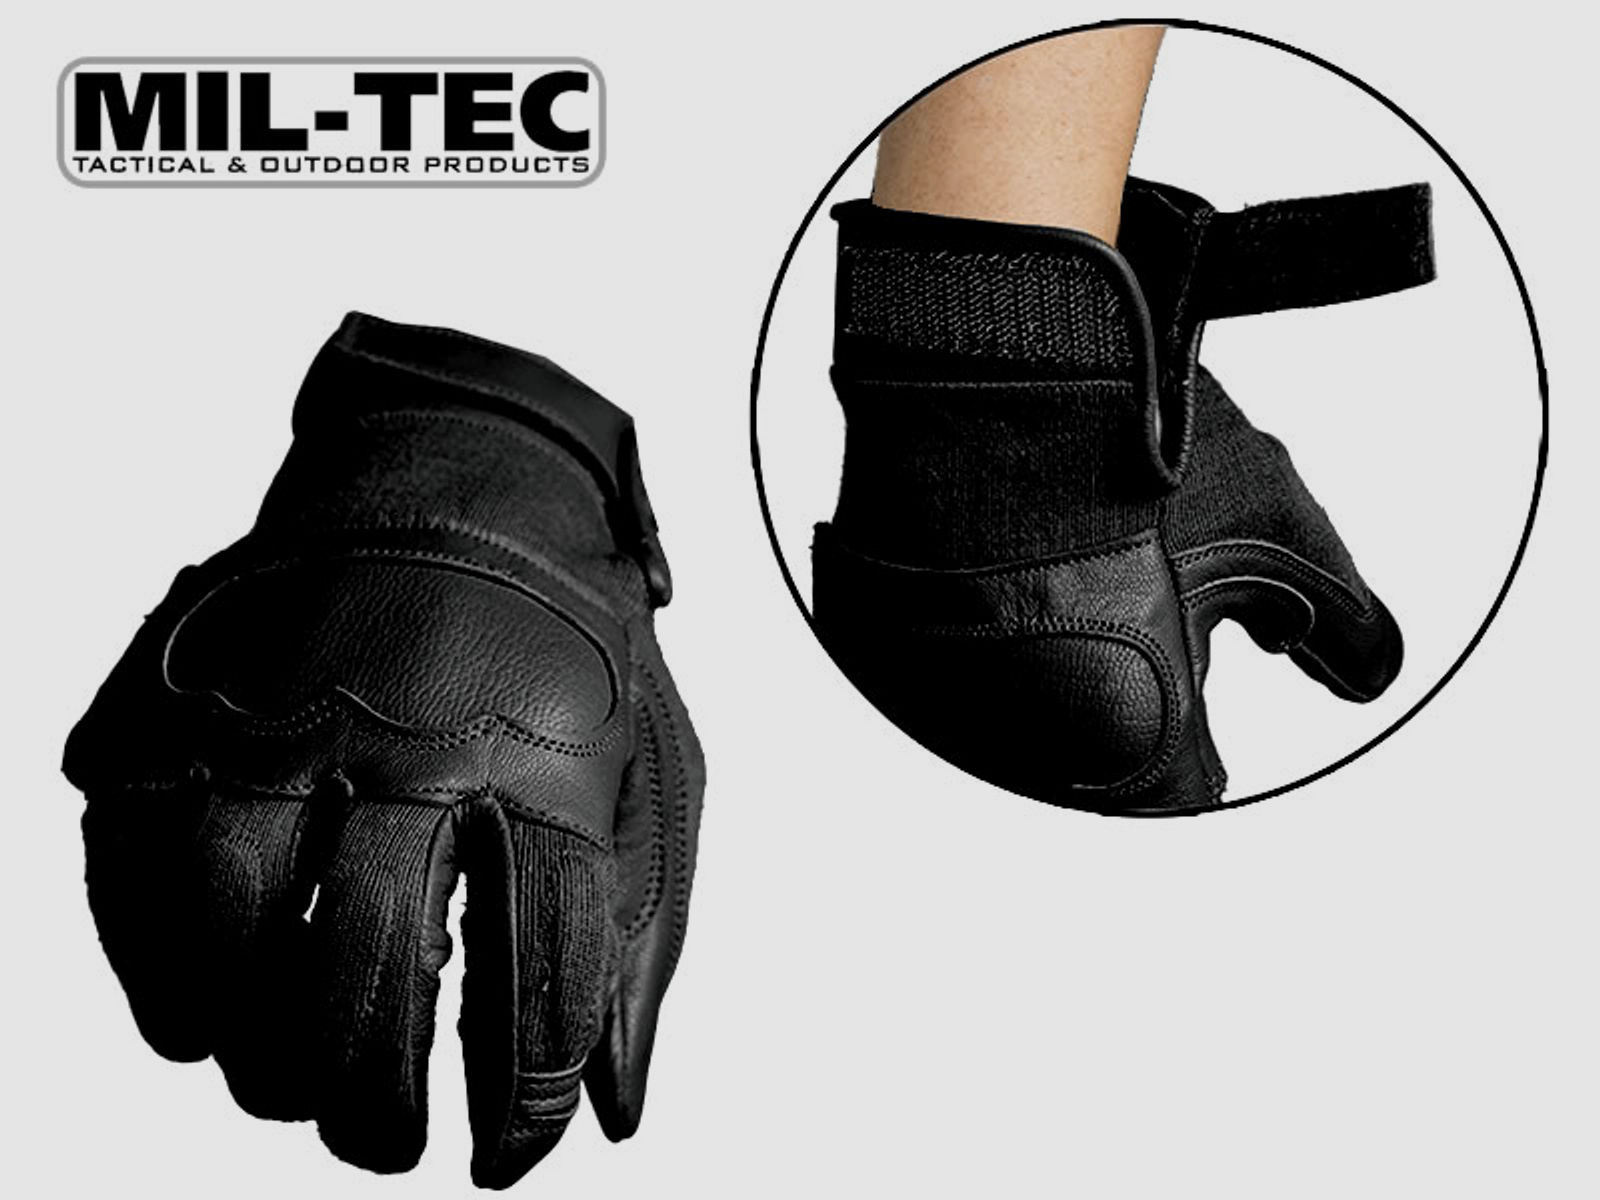 MIL-TEC taktische Lederhandschuhe BLACK, schnitthemmend, KnĂ¶chelschutz, Polsterung, Gr. L